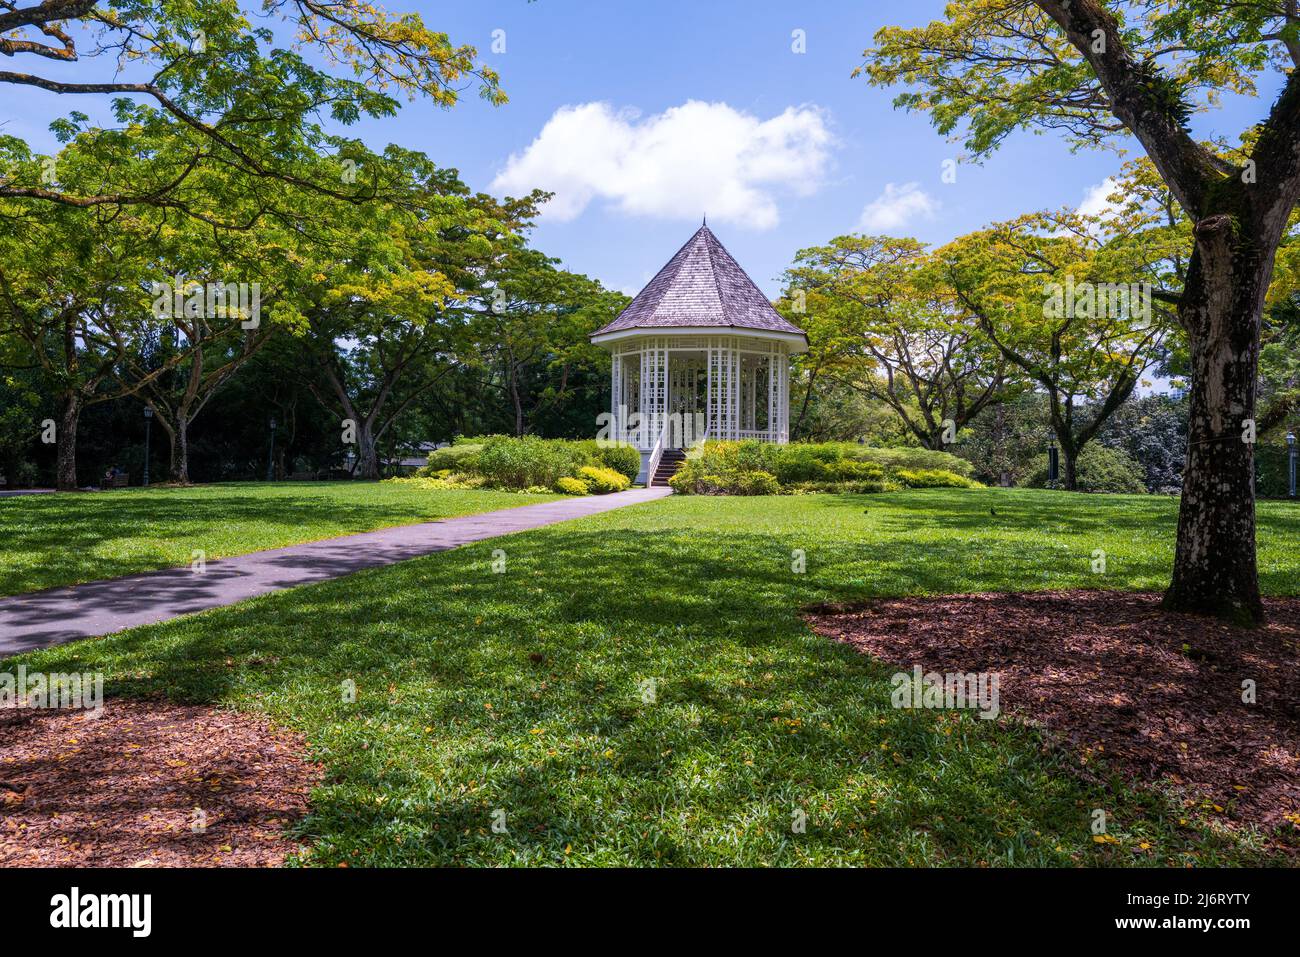 Dieser achteckige Pavillon liegt auf einem Hügel, der als „The Bandstand“ bekannt ist, und wurde 1930 errichtet und ist eine beliebte Attraktion in den Botanischen Gärten von Singapur. Stockfoto